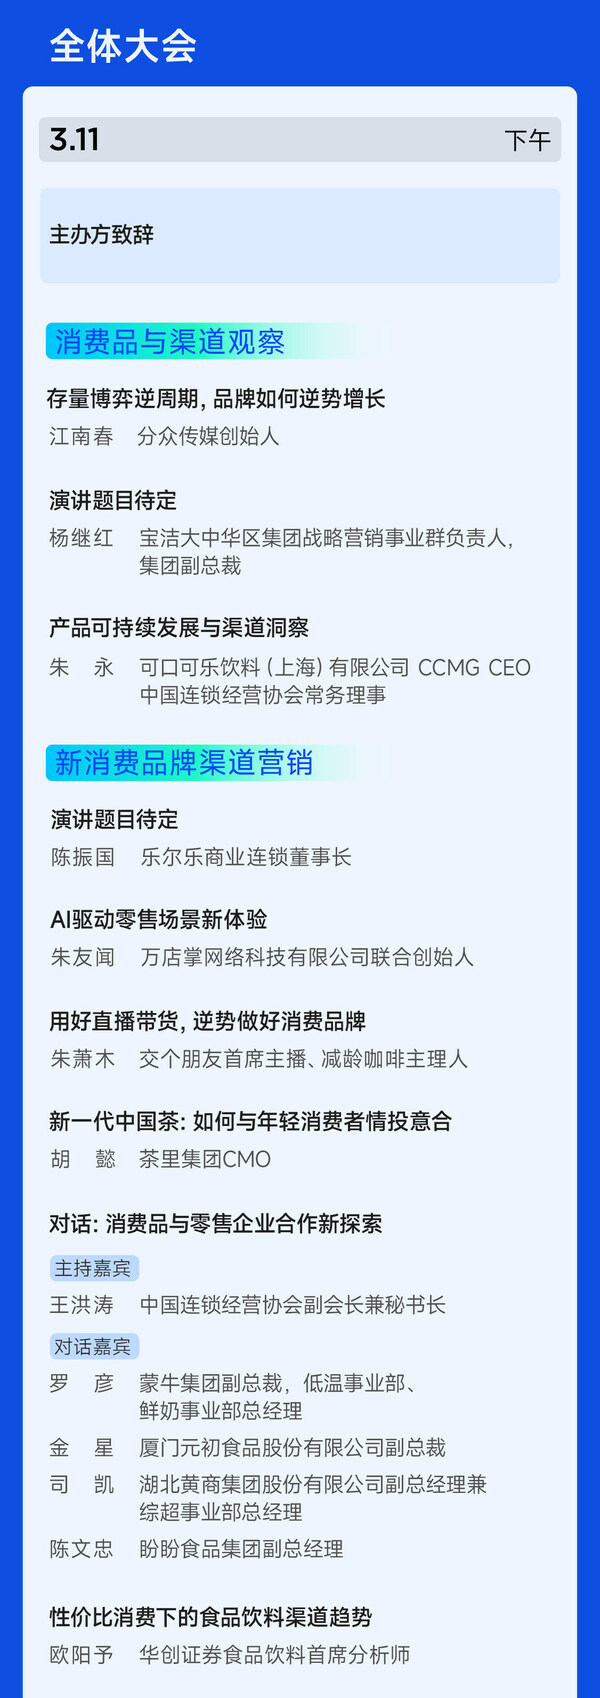 日程公布 消费品渠道营销创新峰会3月11-12日上海召开